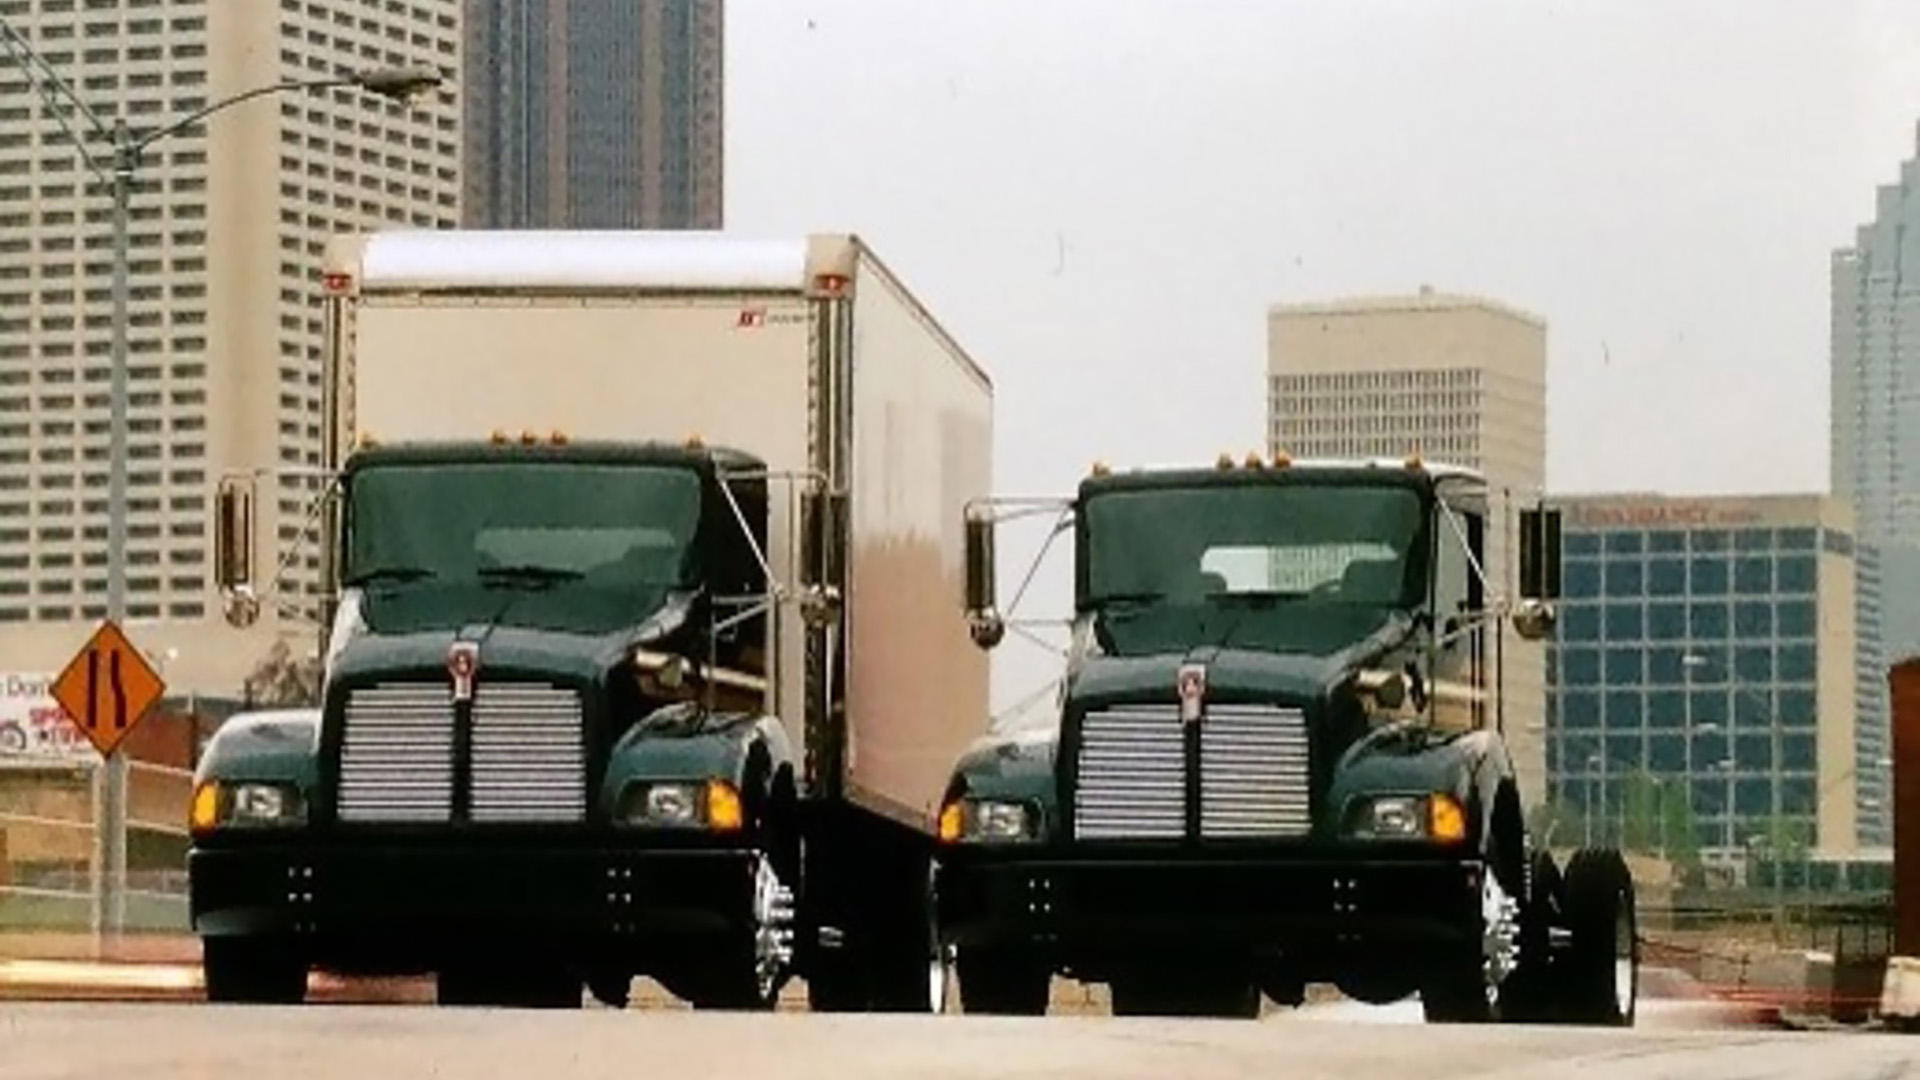 Kenworth truck 1994